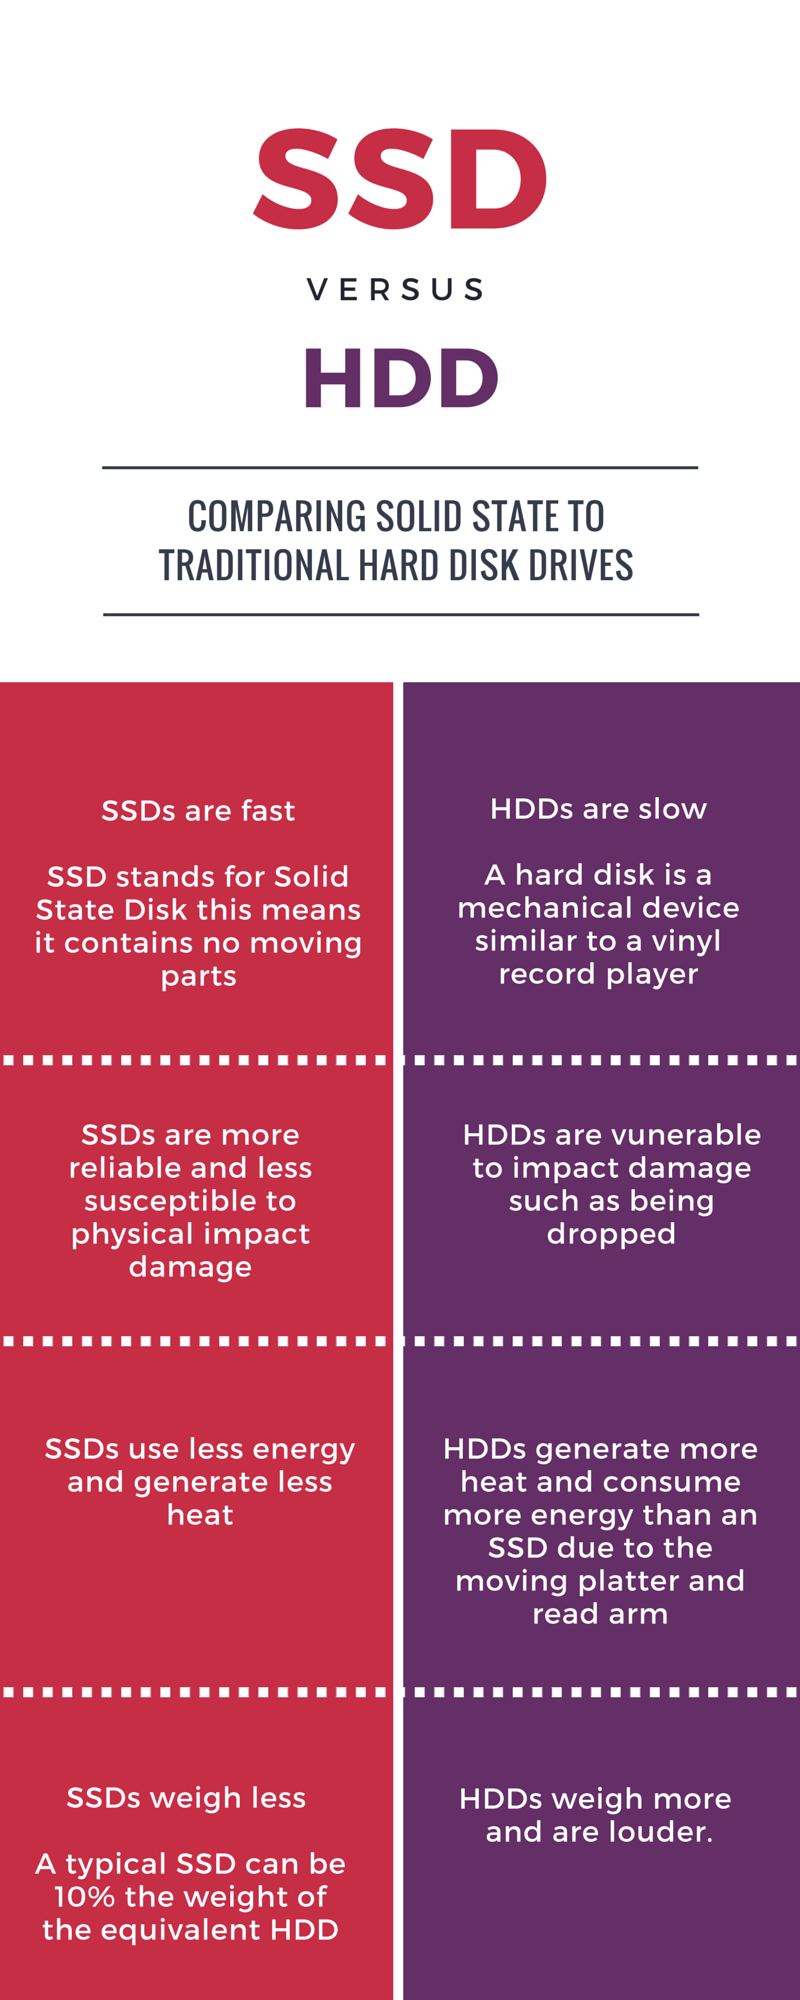 diskret Gavmild Tekstforfatter SSDs vs HDDs | Visual.ly